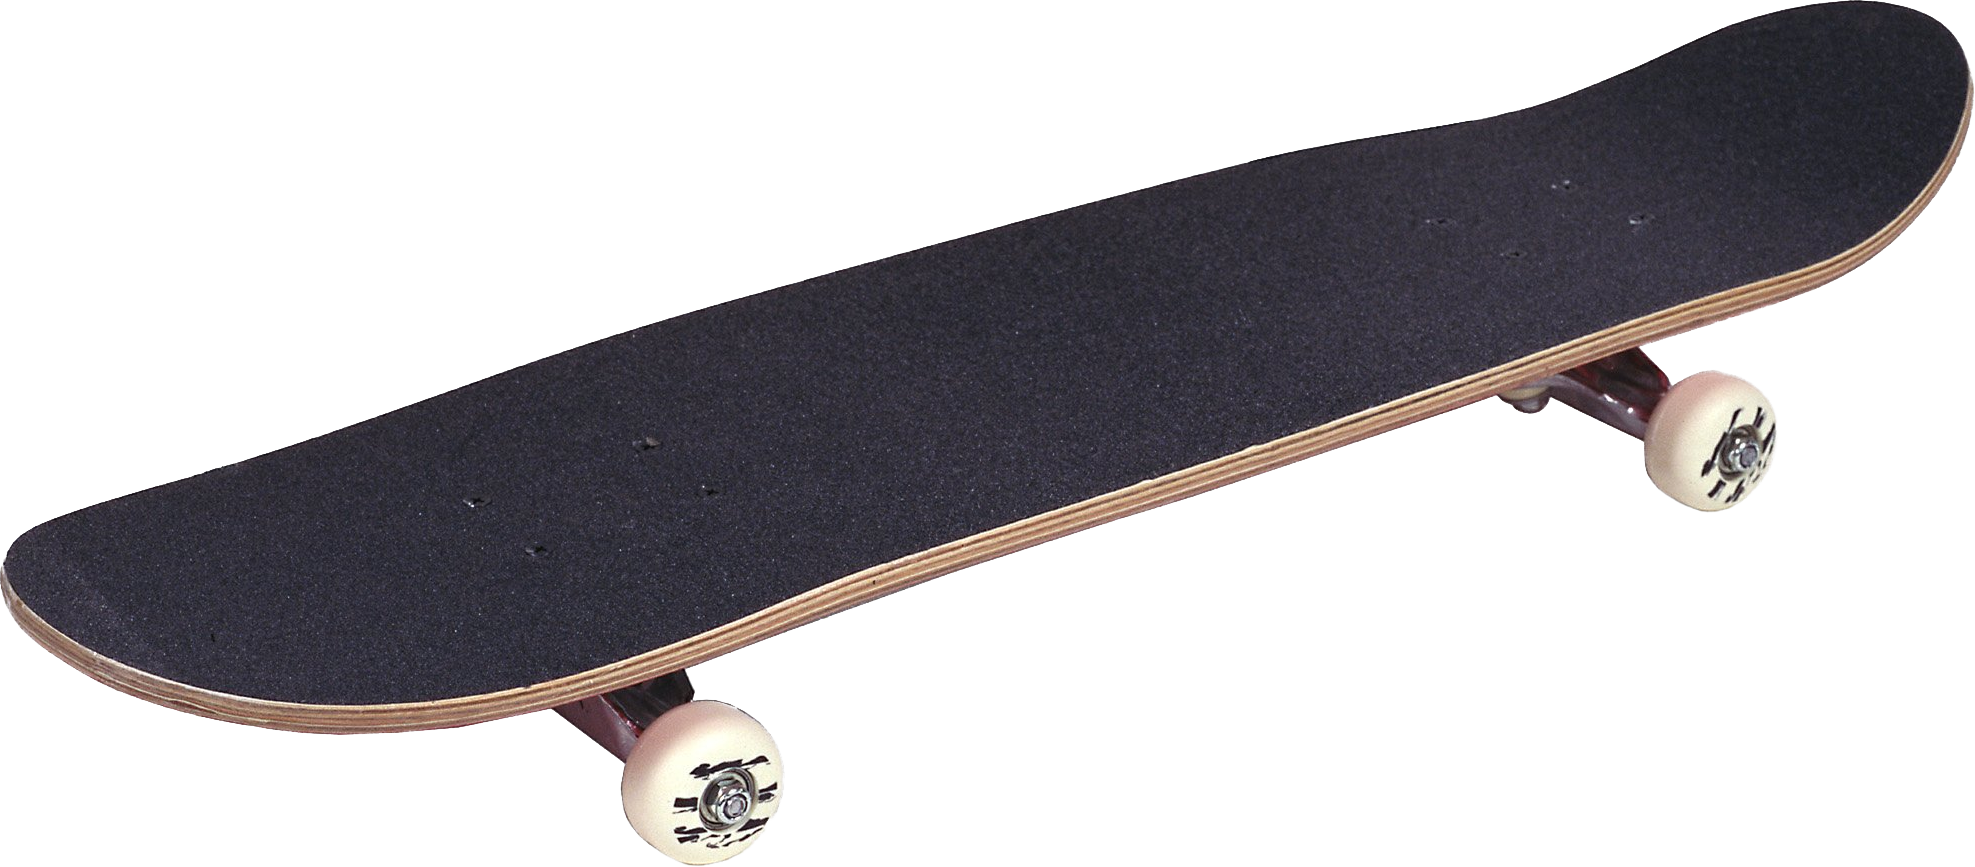 Free Png Skateboard Png Images Transparent - Skateboard Png (850x374), Png Download